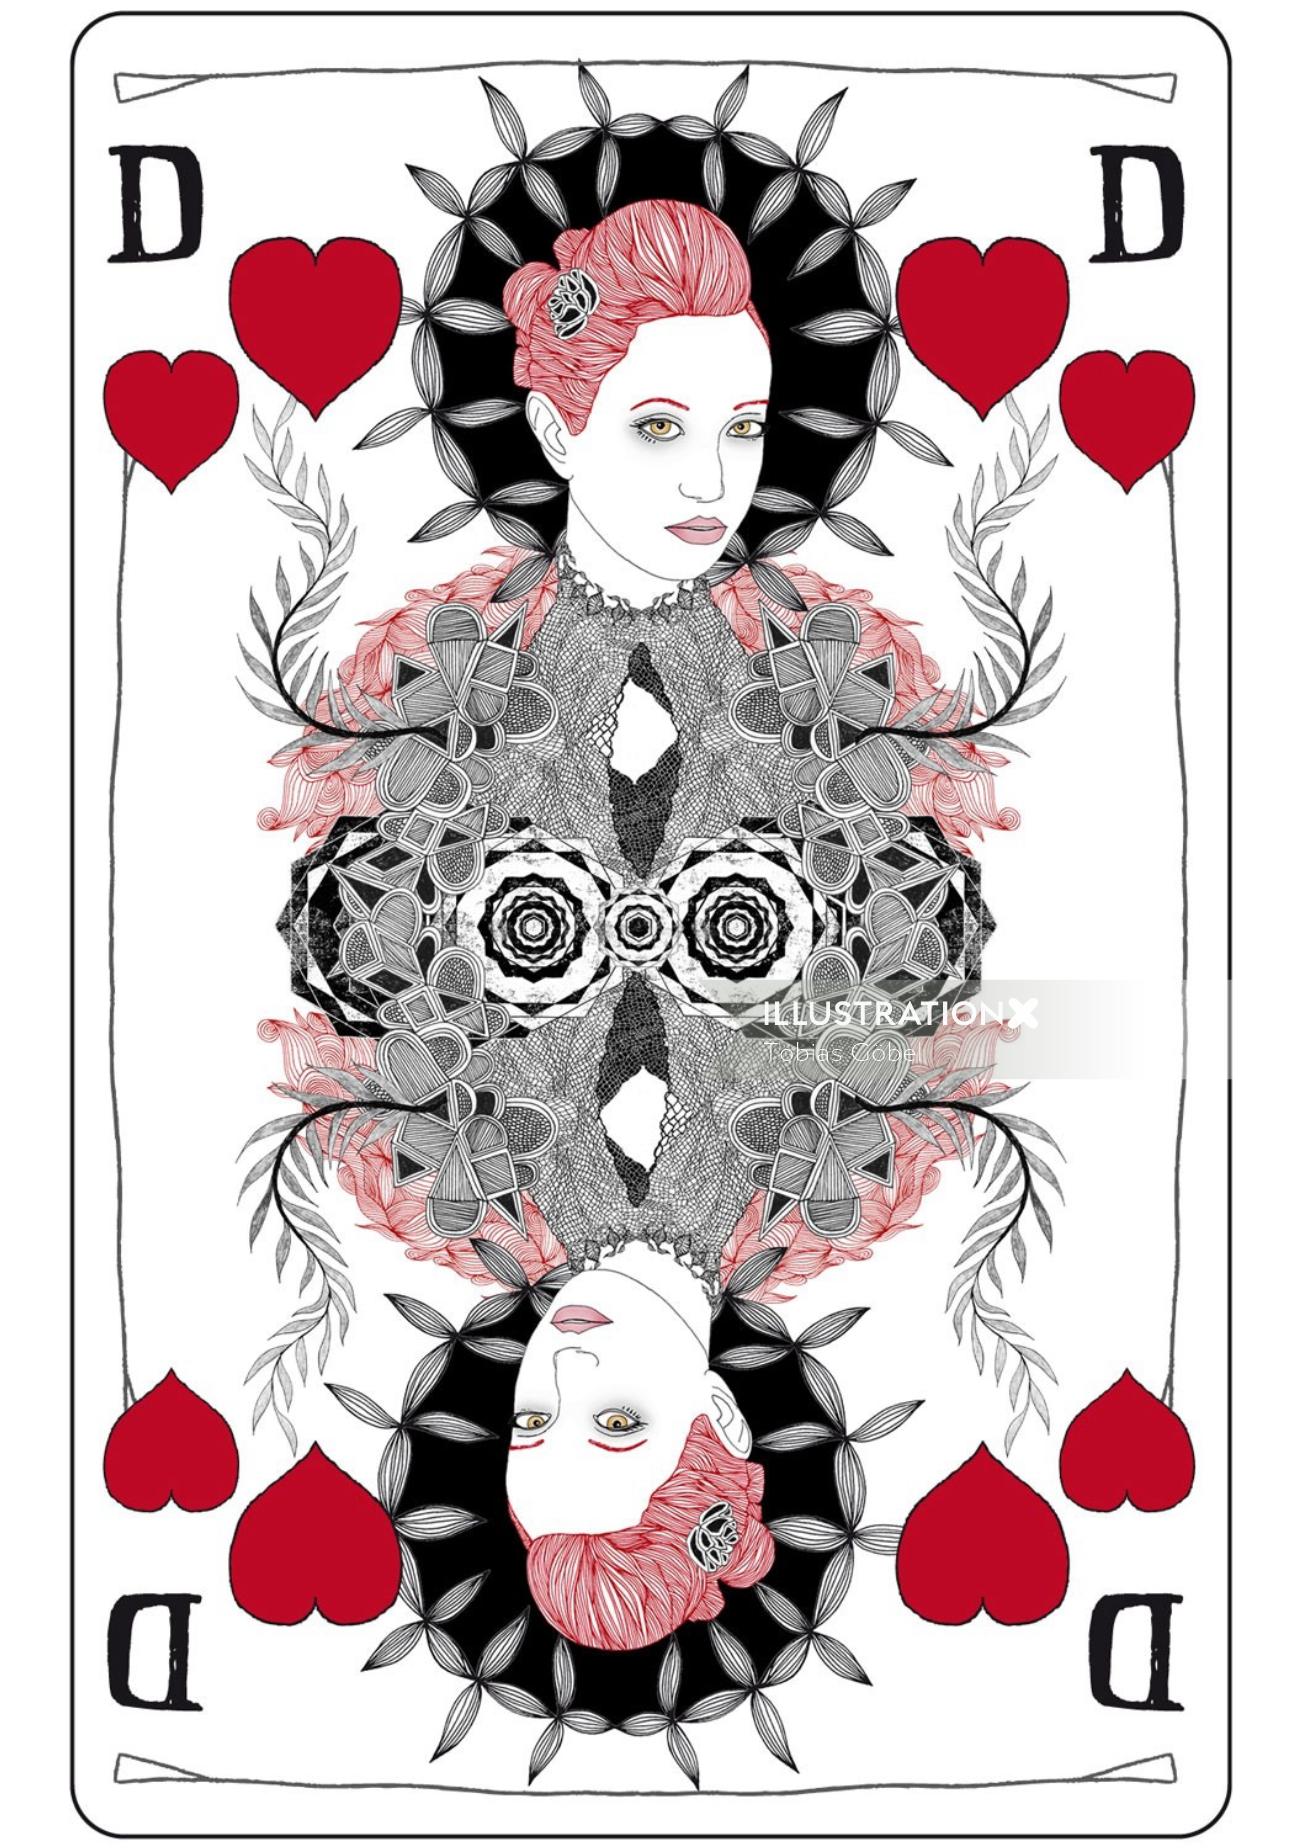 Beauté sur les coeurs de cartes à jouer